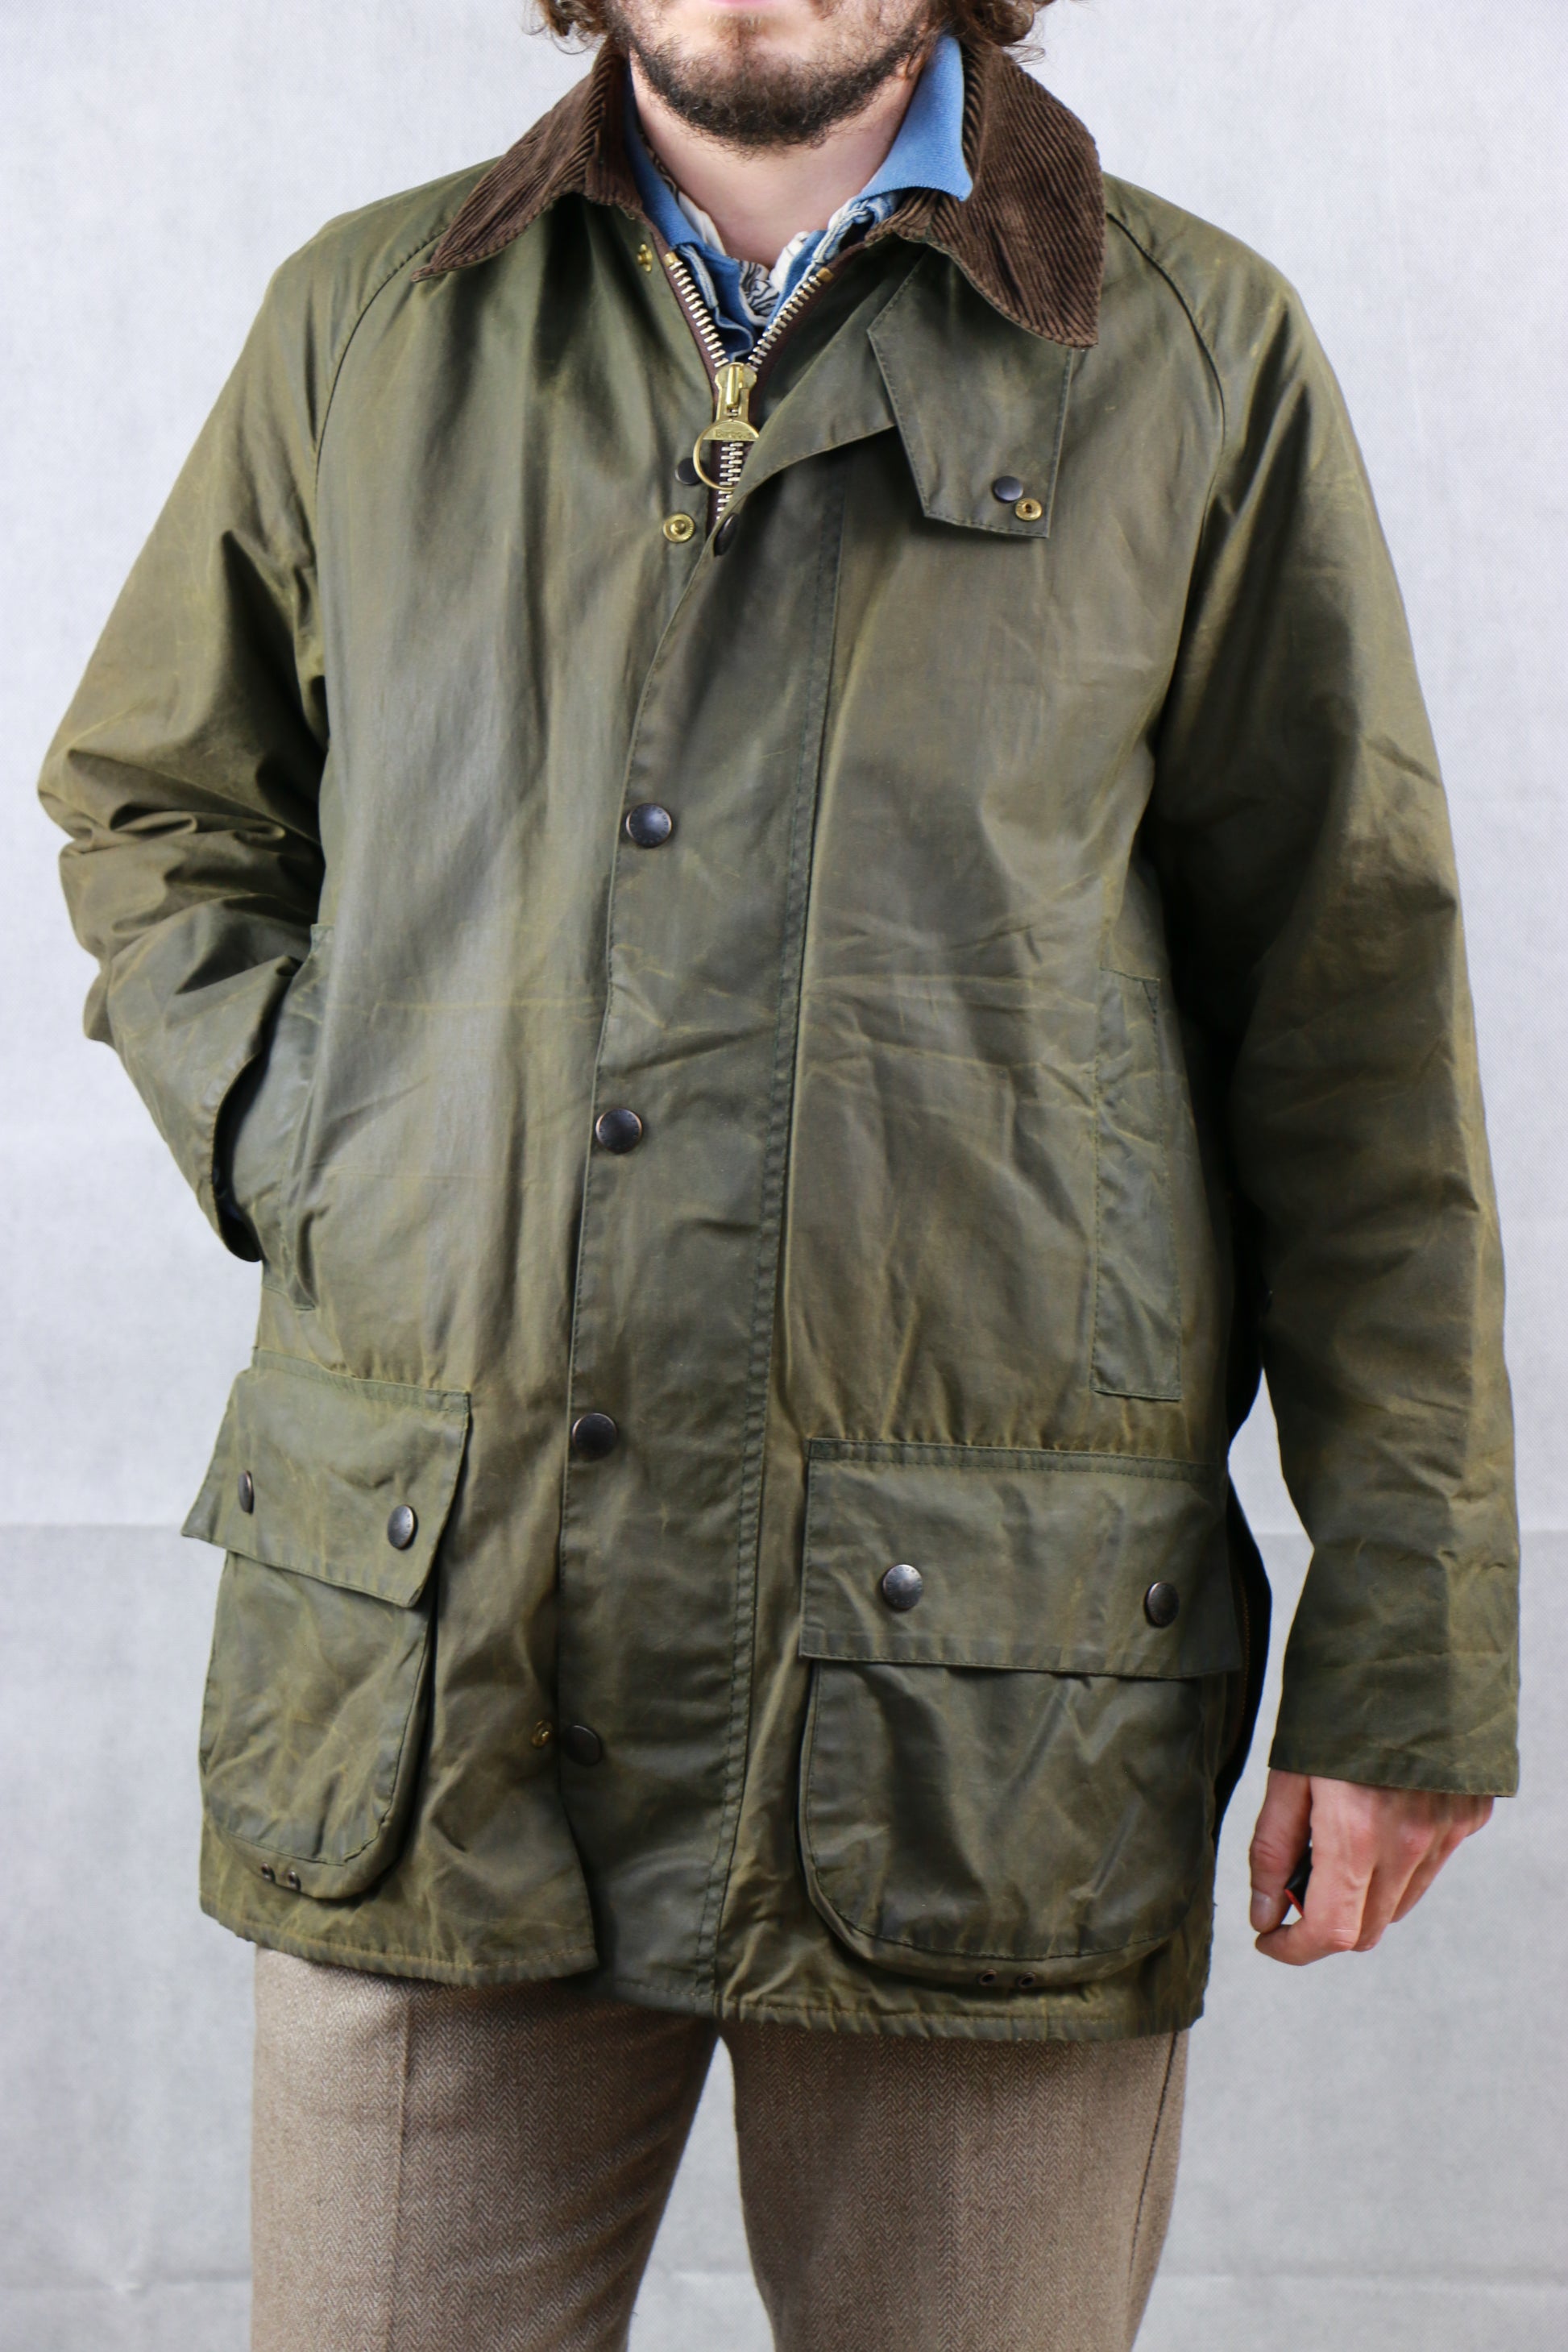 Barbour Beaufort Jacket Olive Green - vintage clothing clochard92.com